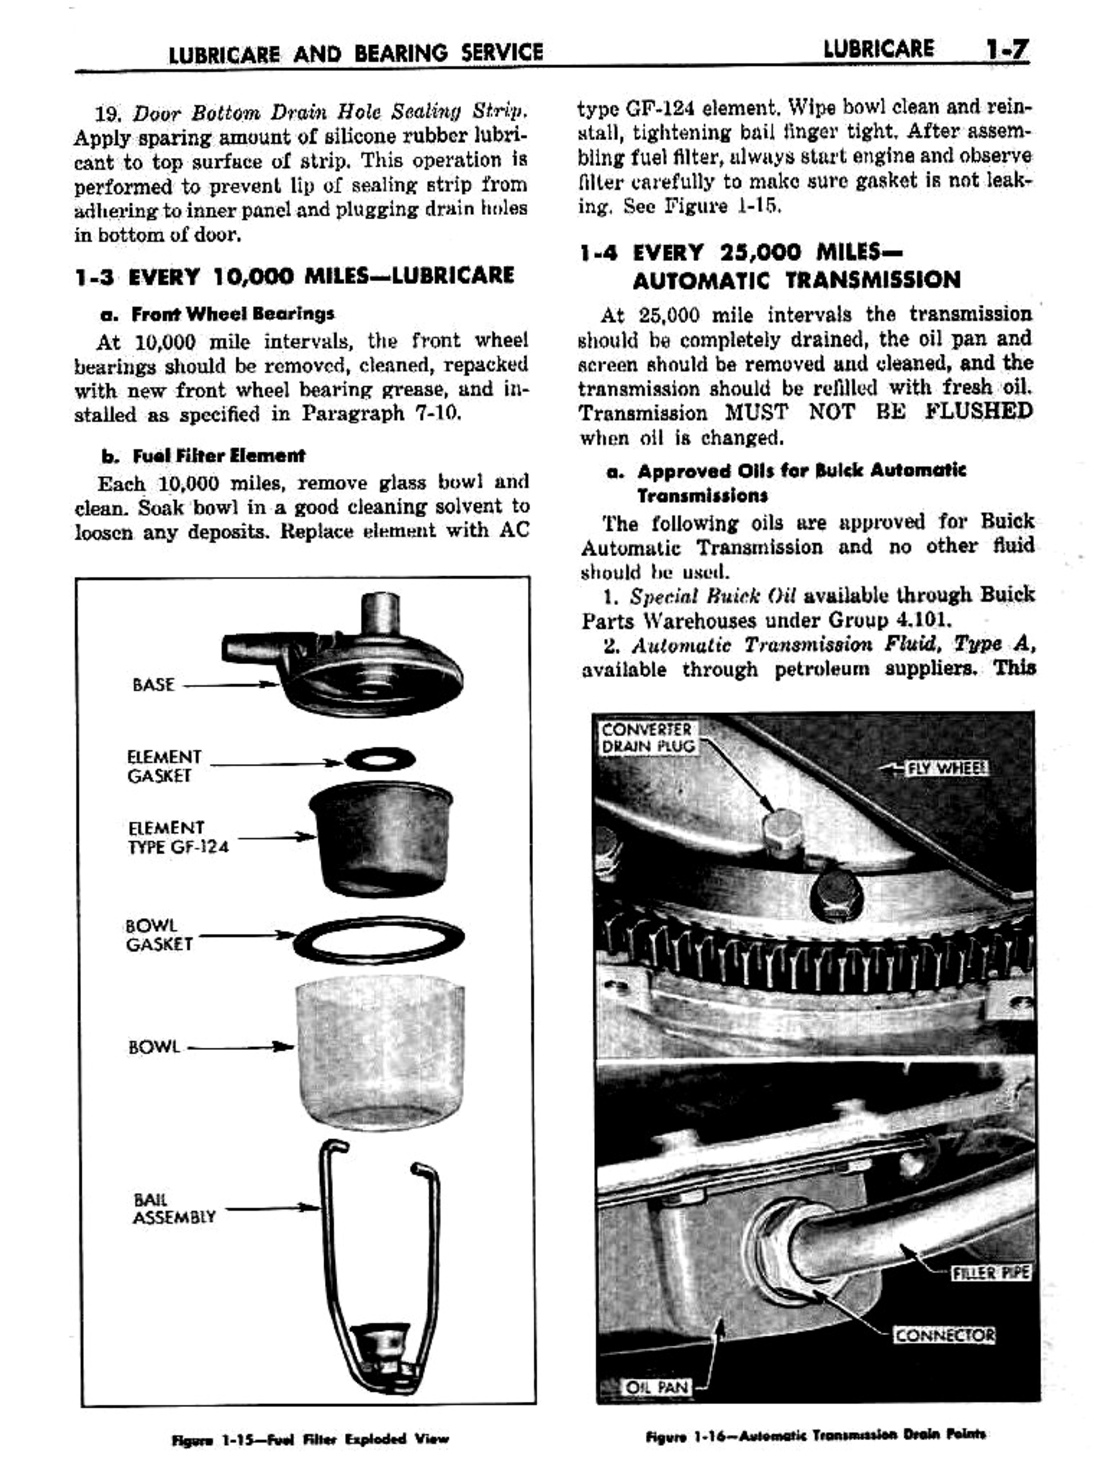 n_02 1959 Buick Shop Manual - Lubricare-007-007.jpg